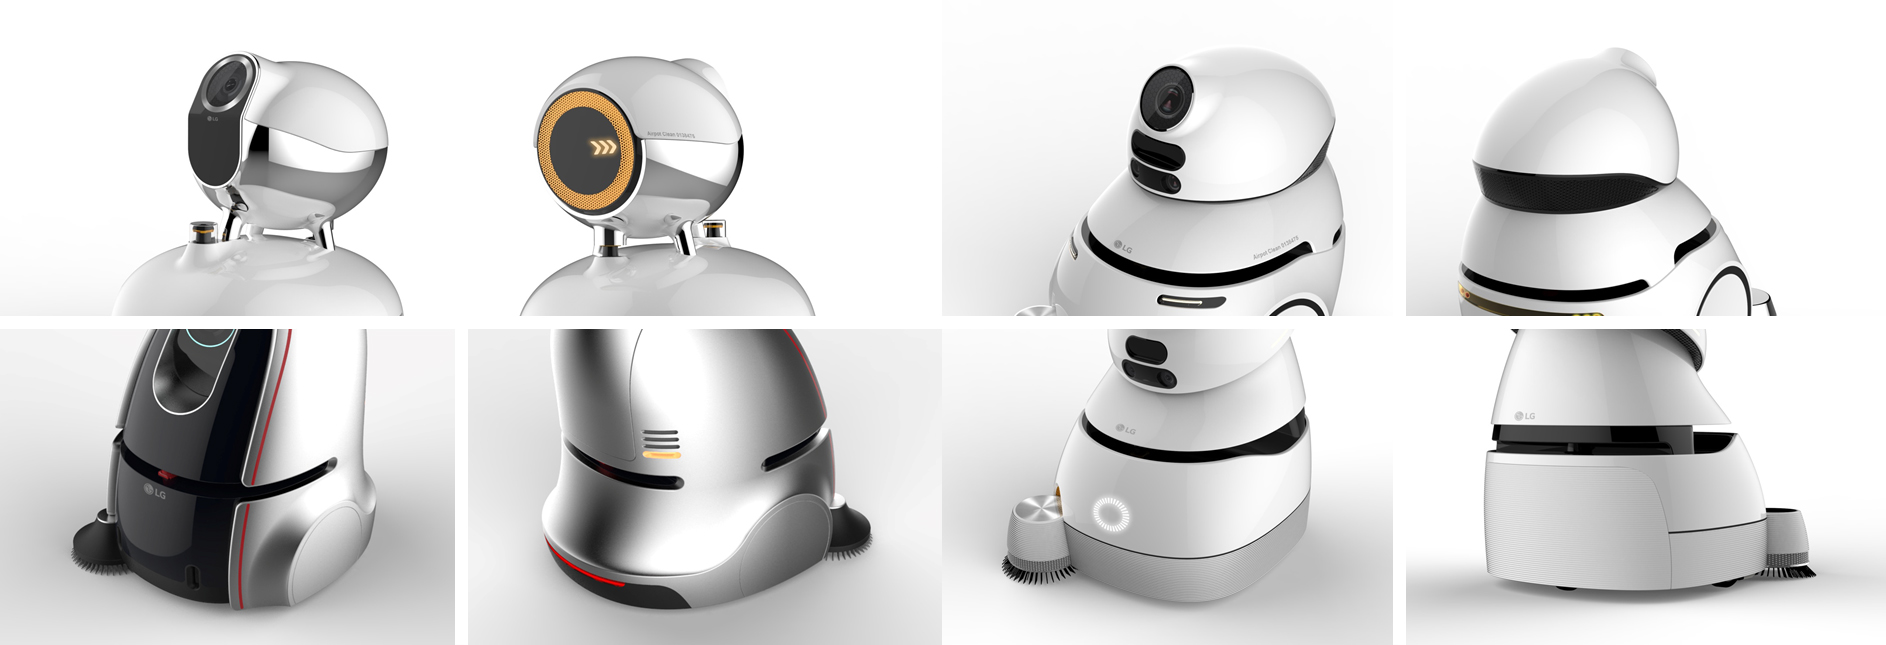 ‘청소 로봇’ 초기 디자인